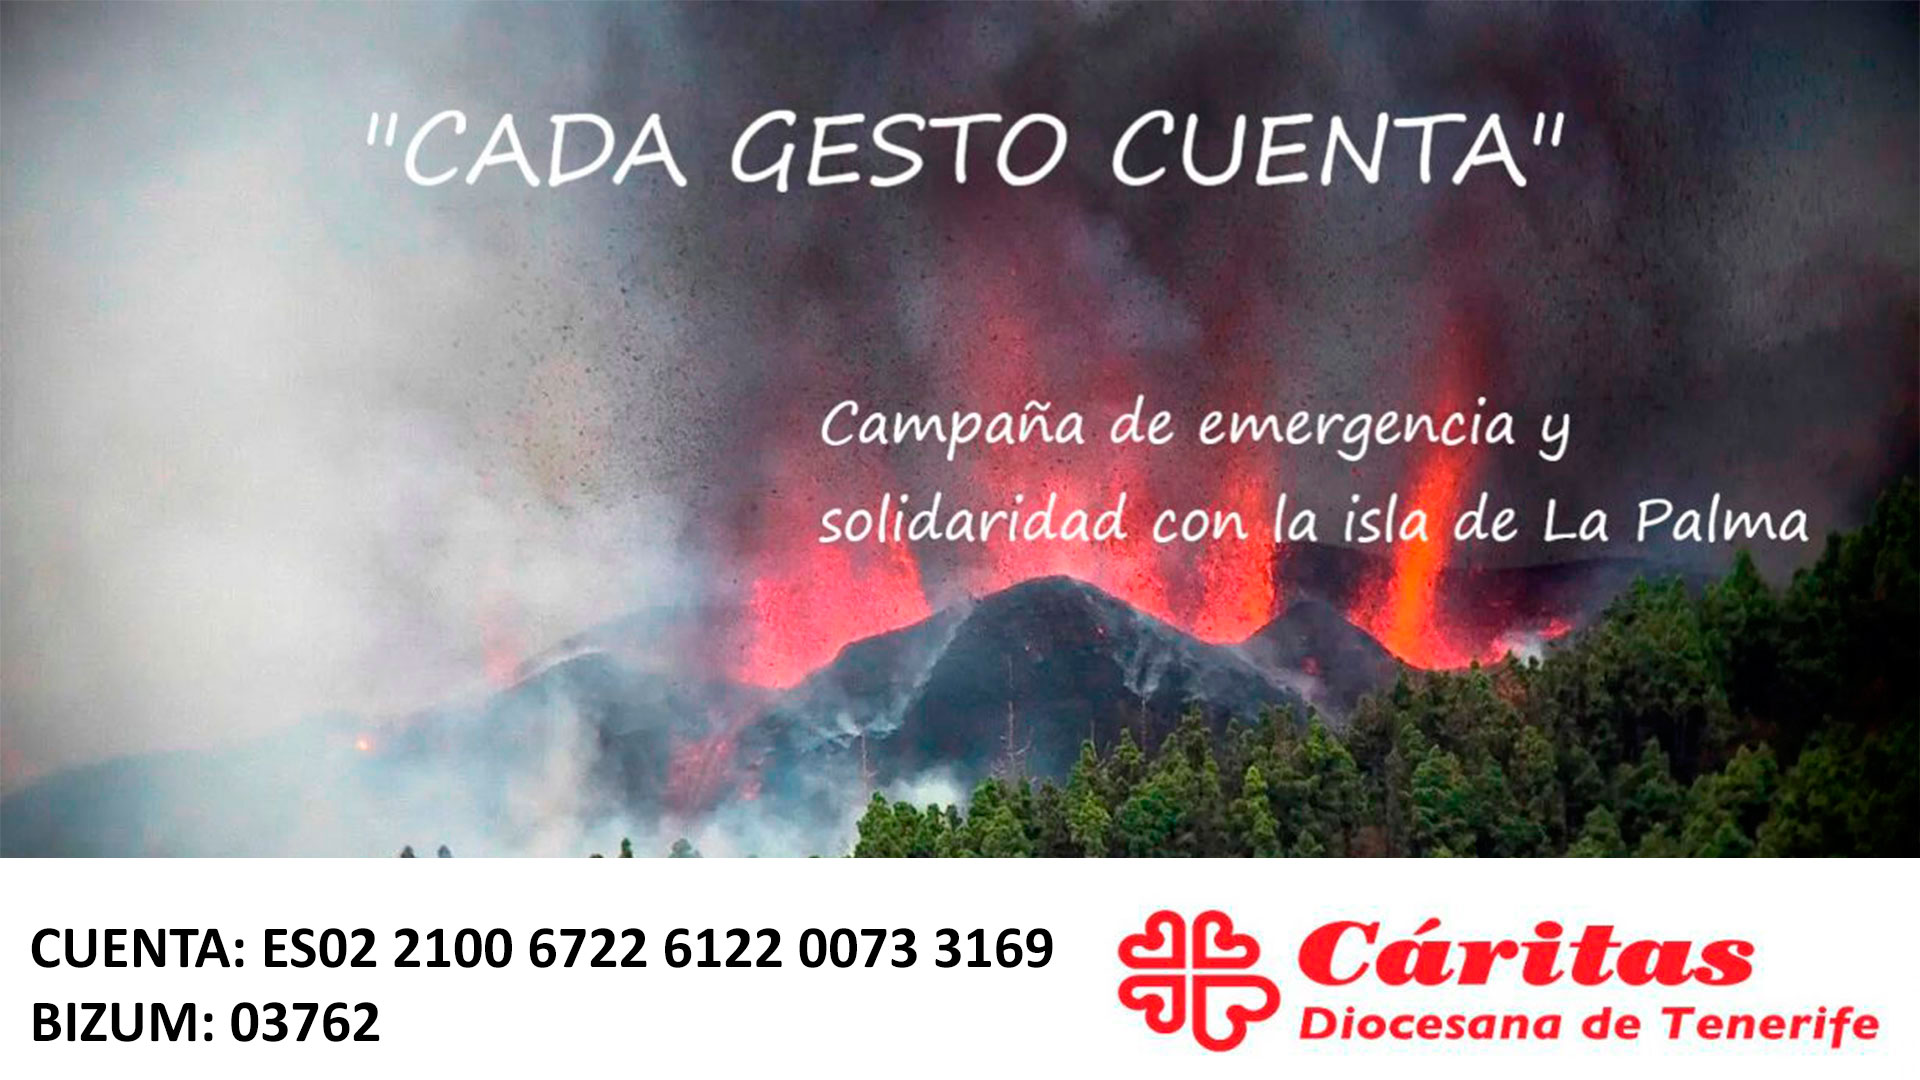 Cáritas Diocesana de Tenerife lanza una campaña de emergencia para canalizar la solidaridad ciudadana con la población de la isla de La Palma